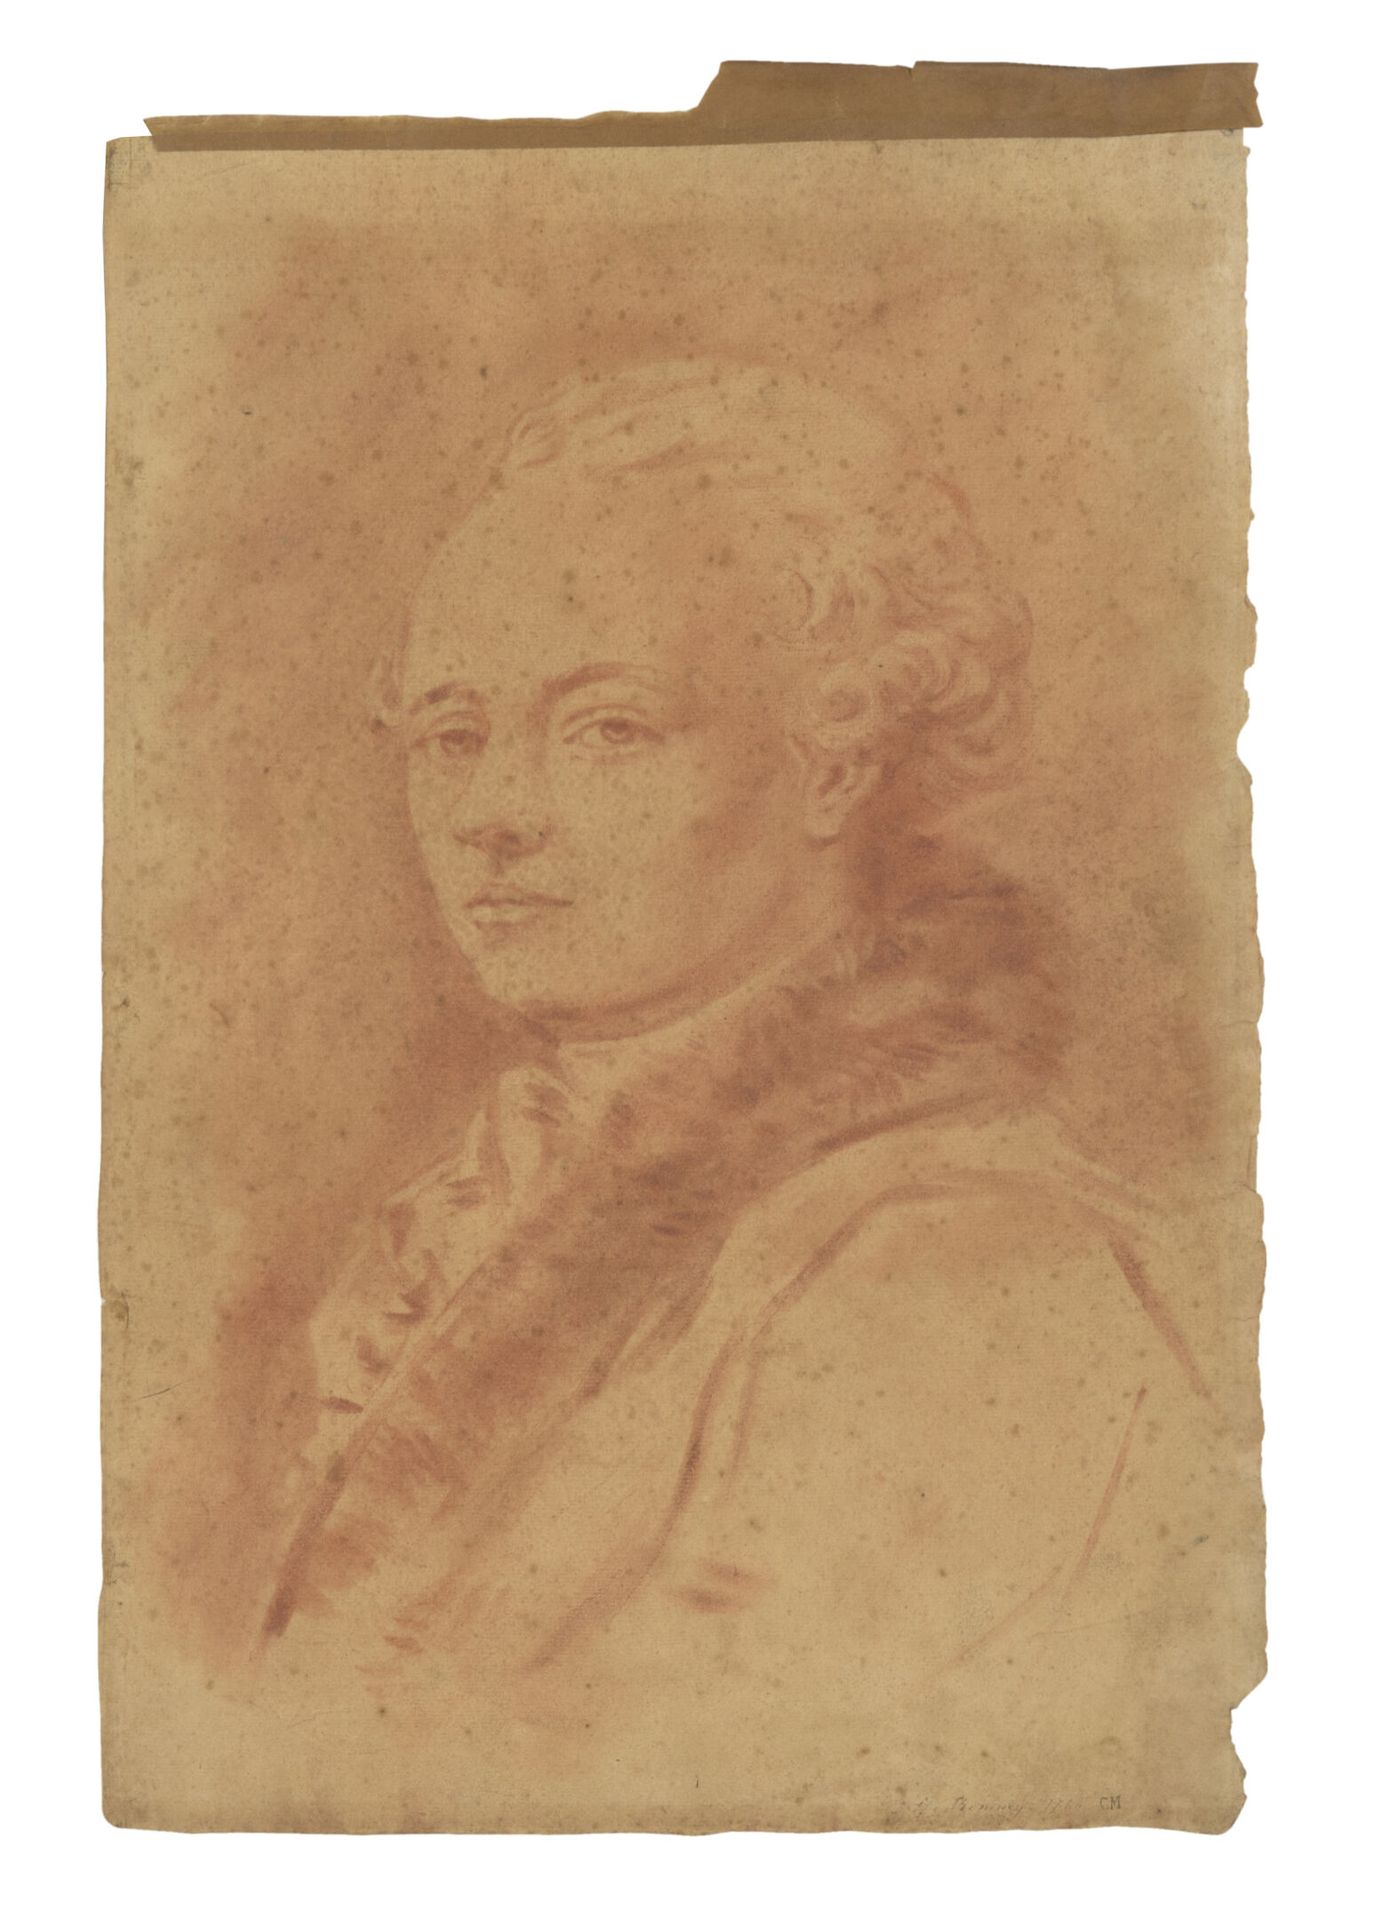 École du XVIII ou XIXème siècle. Portrait of a man in three-quarter view with a &hellip;